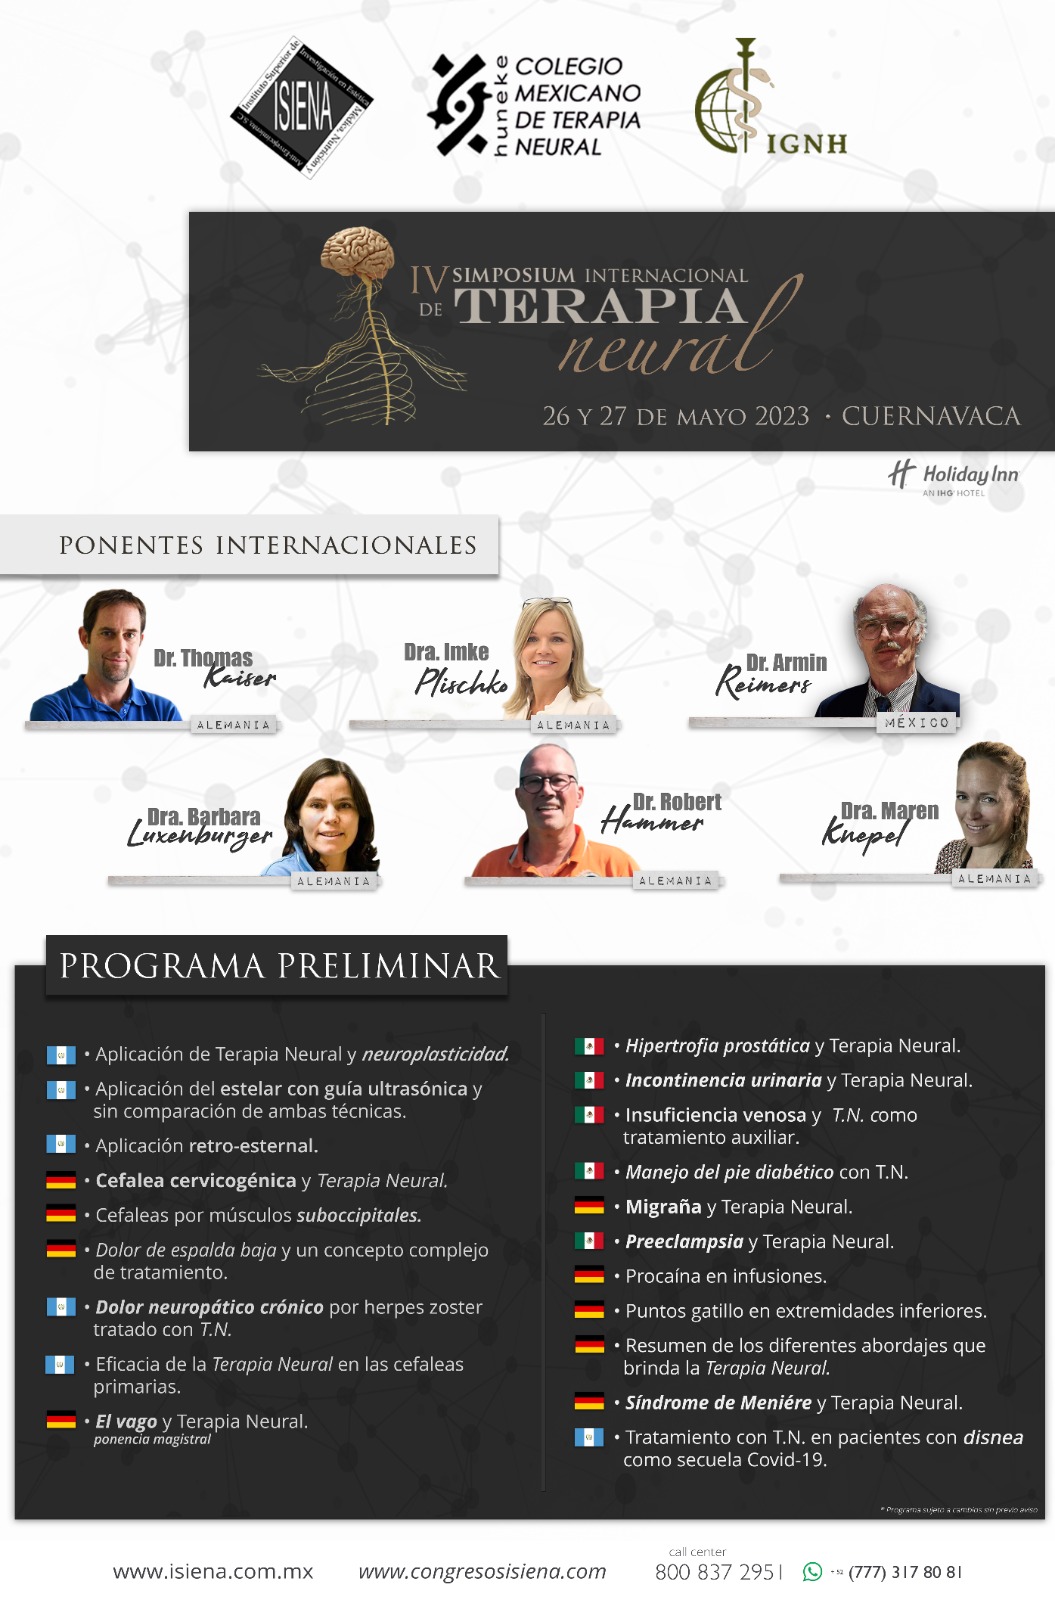 Simposium Internacional de Terapia Neural